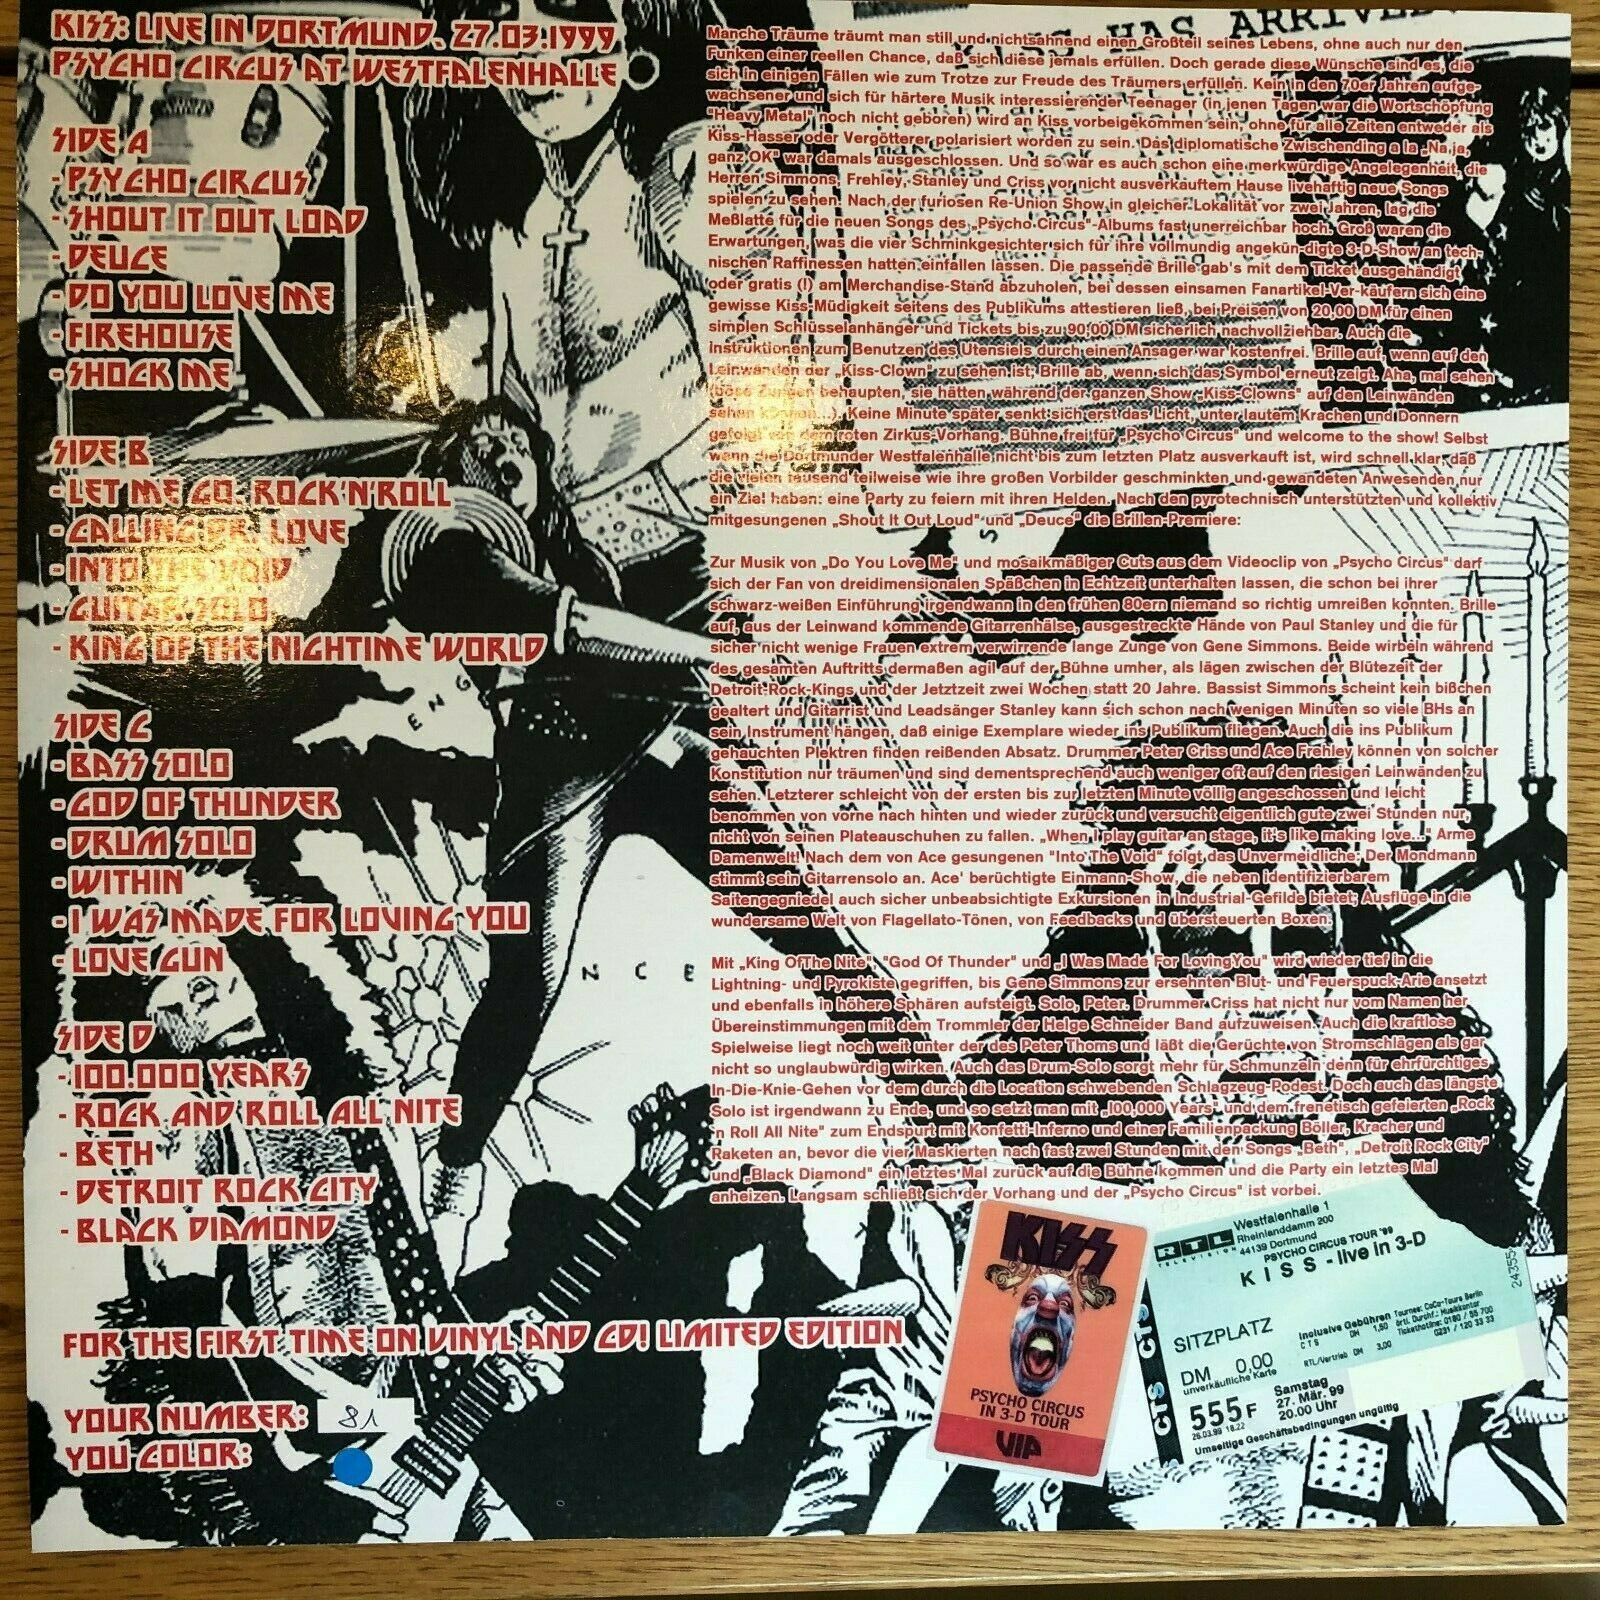 popsike.com - Kiss Dortmund Rock City 1999, Psycho Circus Tour, blue vinyl  2 LP - auction details